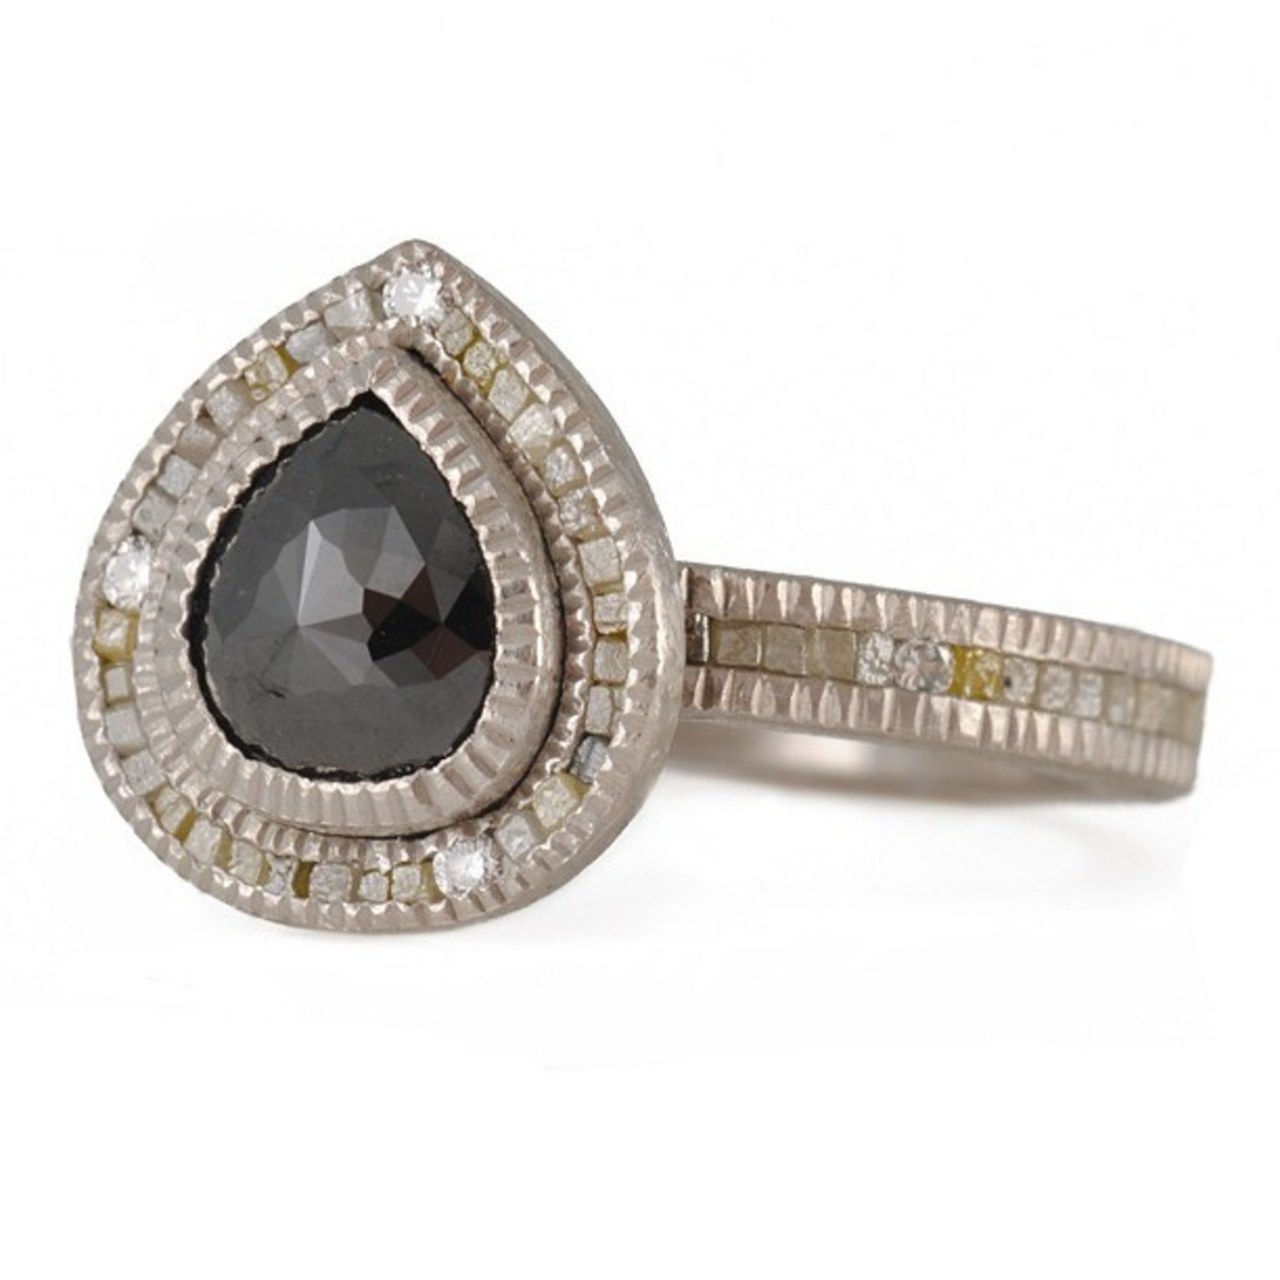 2 engagement rings inspired by kat von d black diamond skull 1218